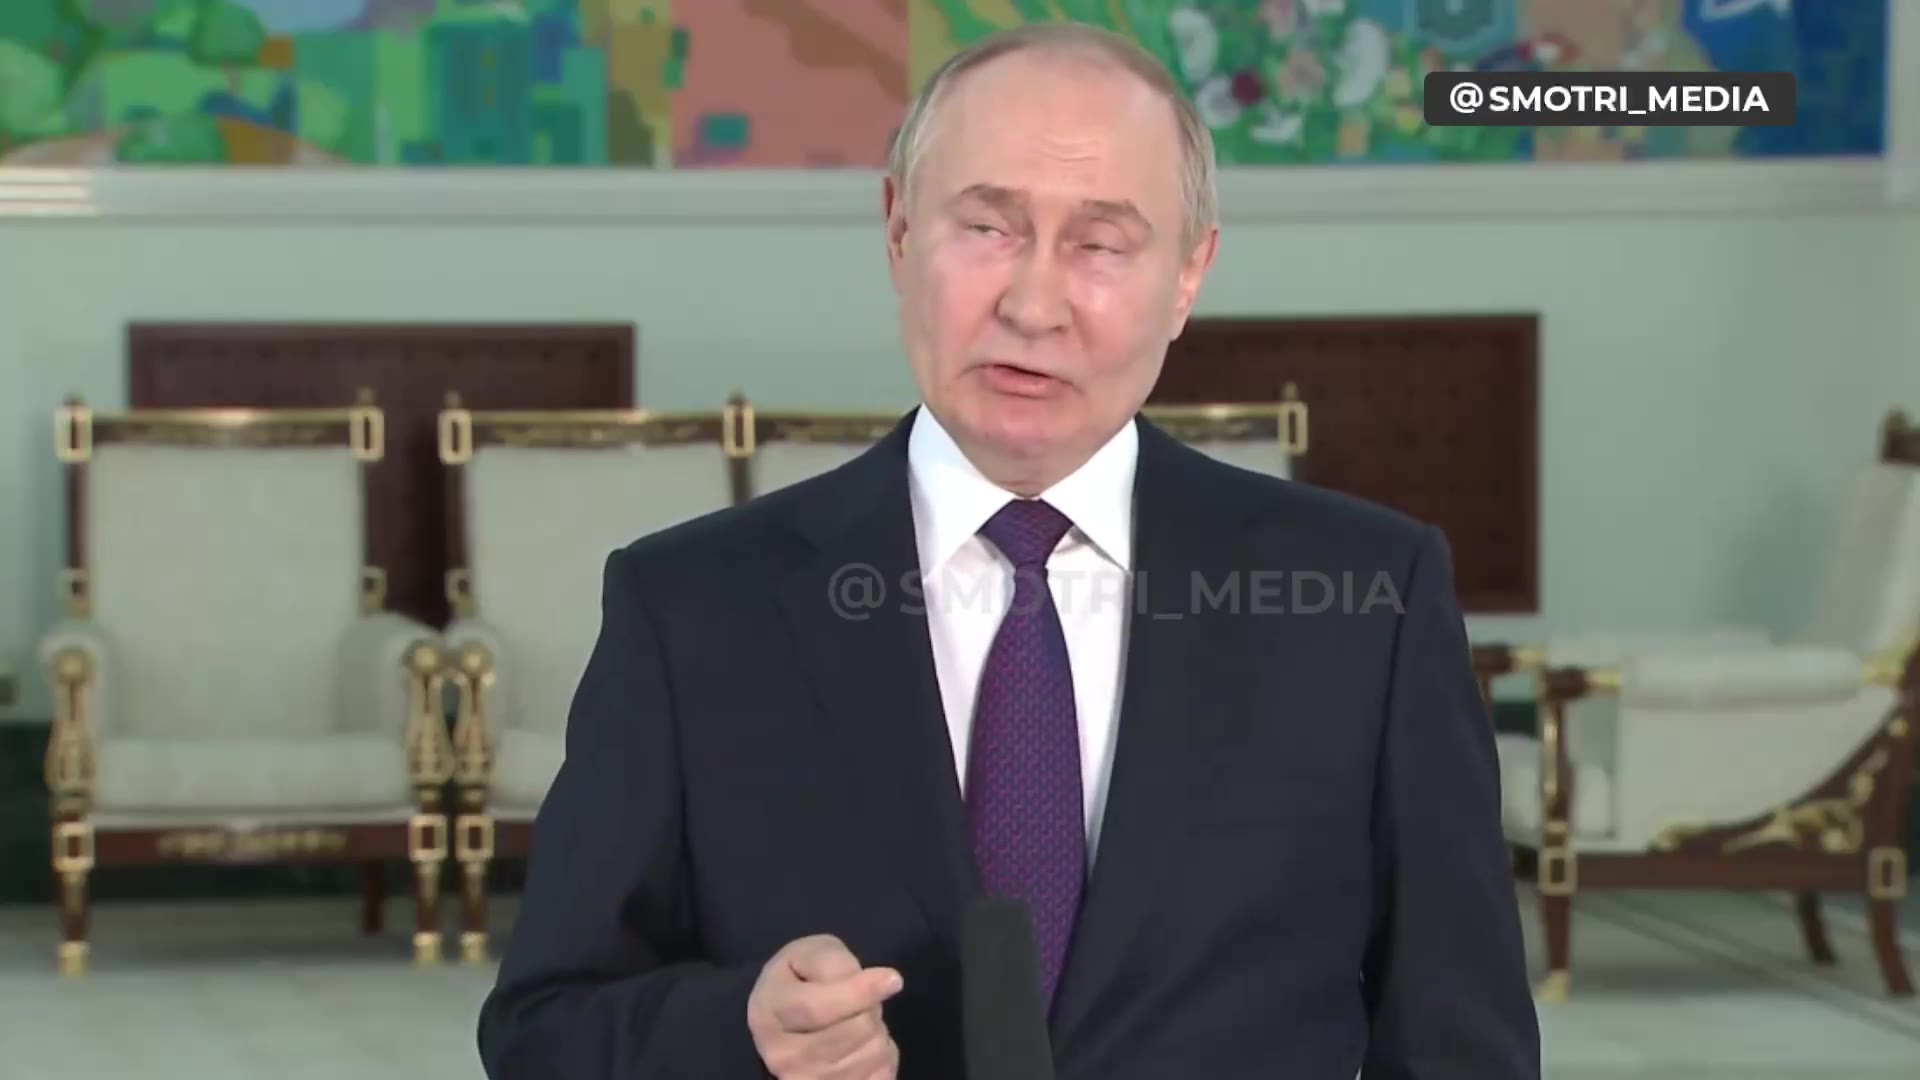 Putin: Ukrainan Verkhovna Rada on legitiimi ja Verkhovna Radan puhemiehen tulisi olla virkaatekevä presidentti